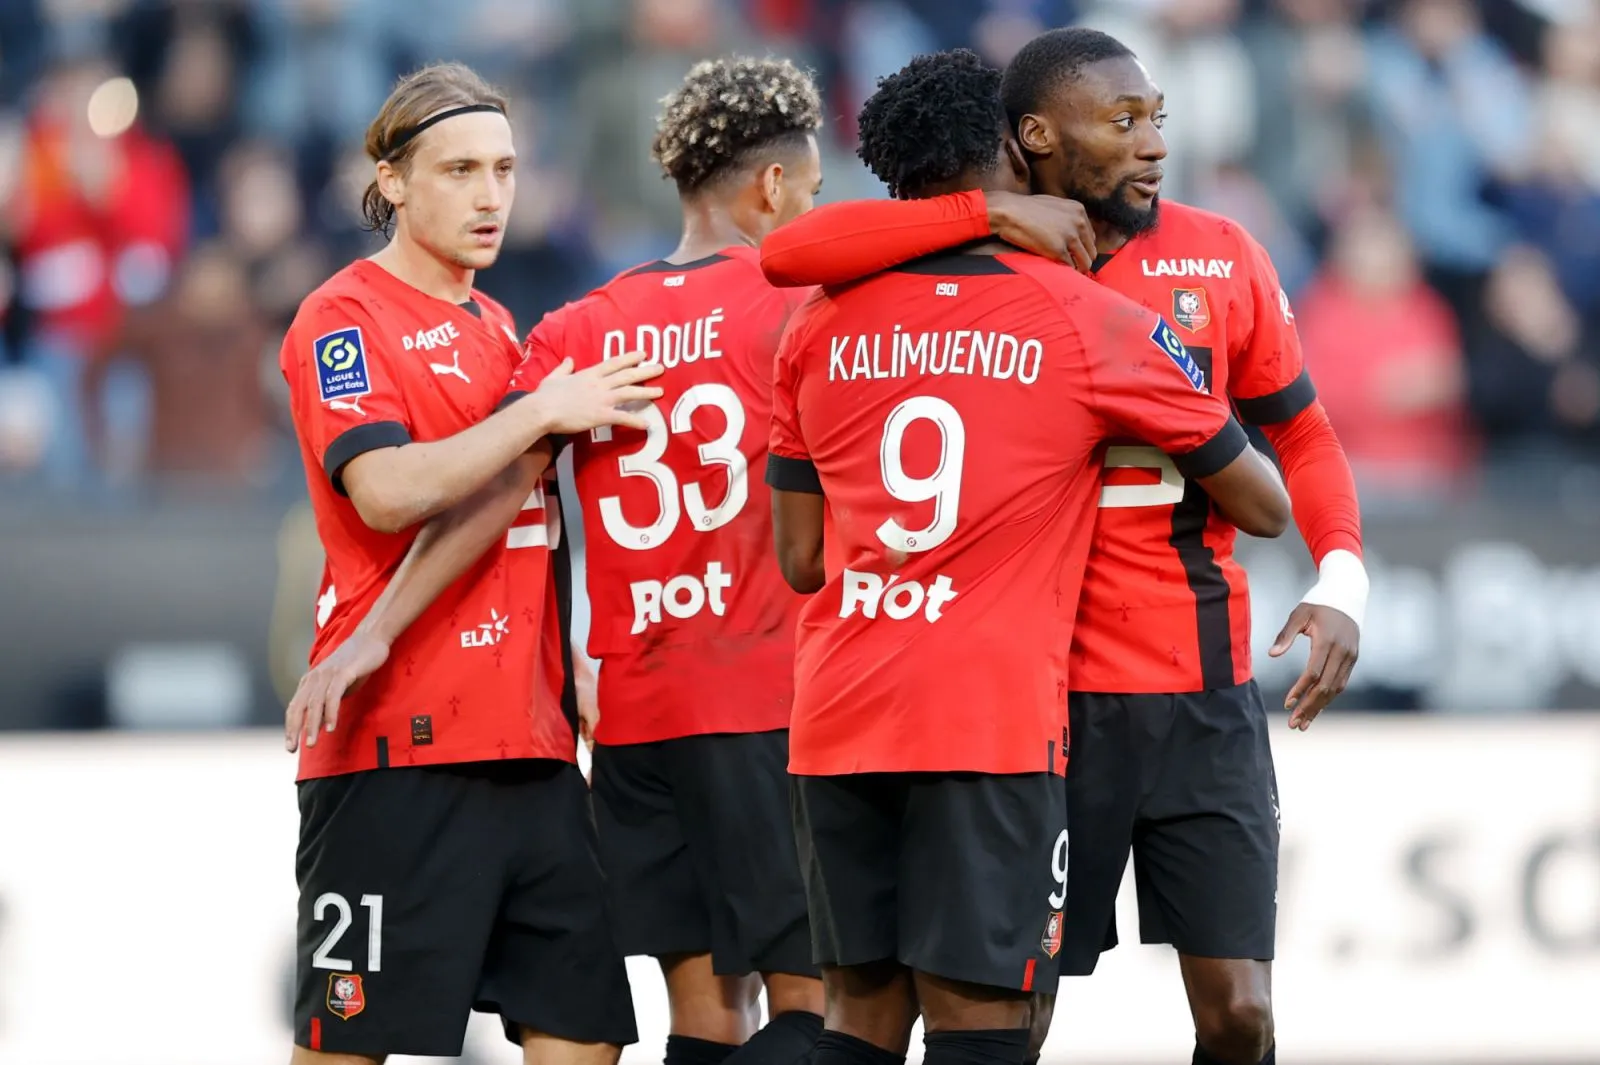 Pronostic Auxerre Rennes : Analyse, cotes et prono du match de Ligue 1